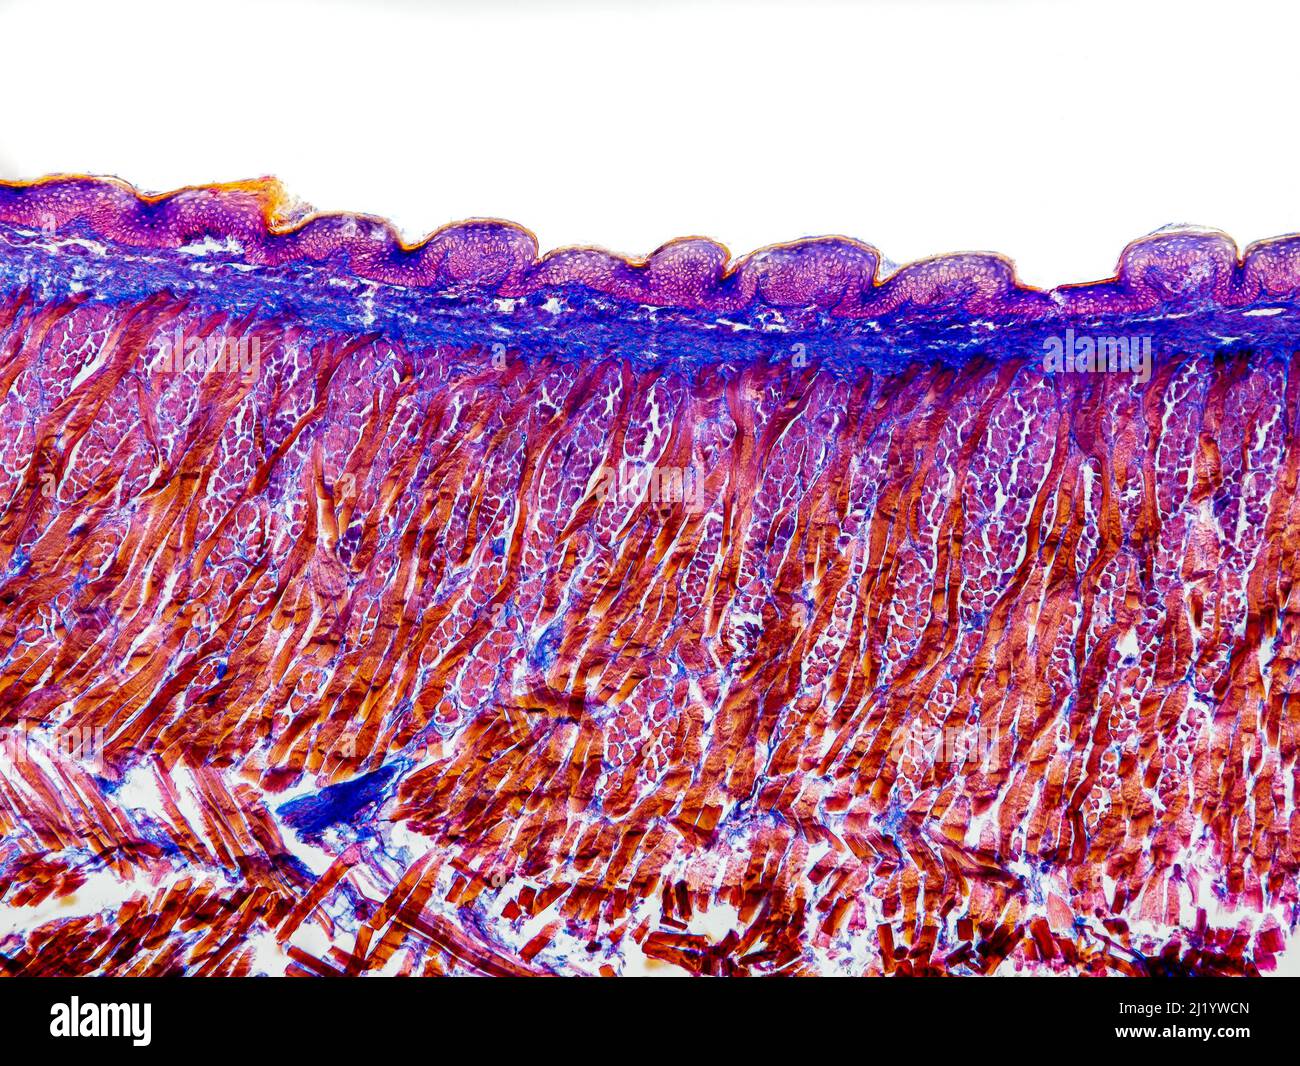 Katzenzungenquerschnitt unter dem Mikroskop mit Blattapapillen, Geschmacksnerven, Submucosa und Muskel - optisches Mikroskop mit x100-facher Vergrößerung Stockfoto